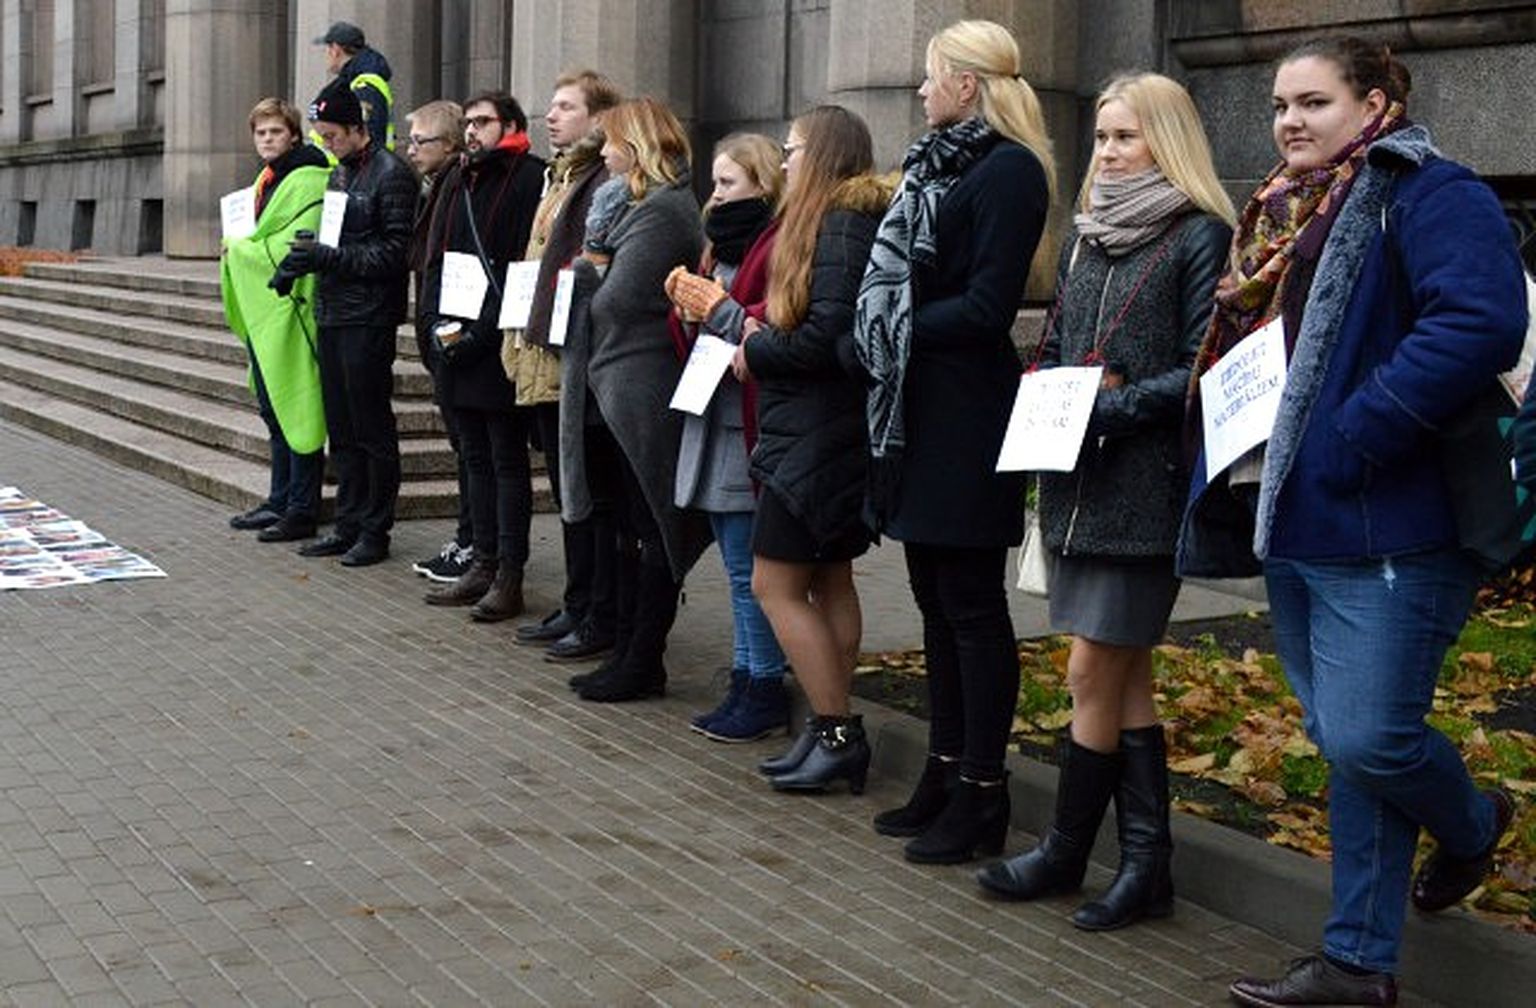 Latvijas Studentu apvienības zibakcija pie Ministru kabineta, kurā protestē pret finansējuma samazināšanu augstākajai izglītībai